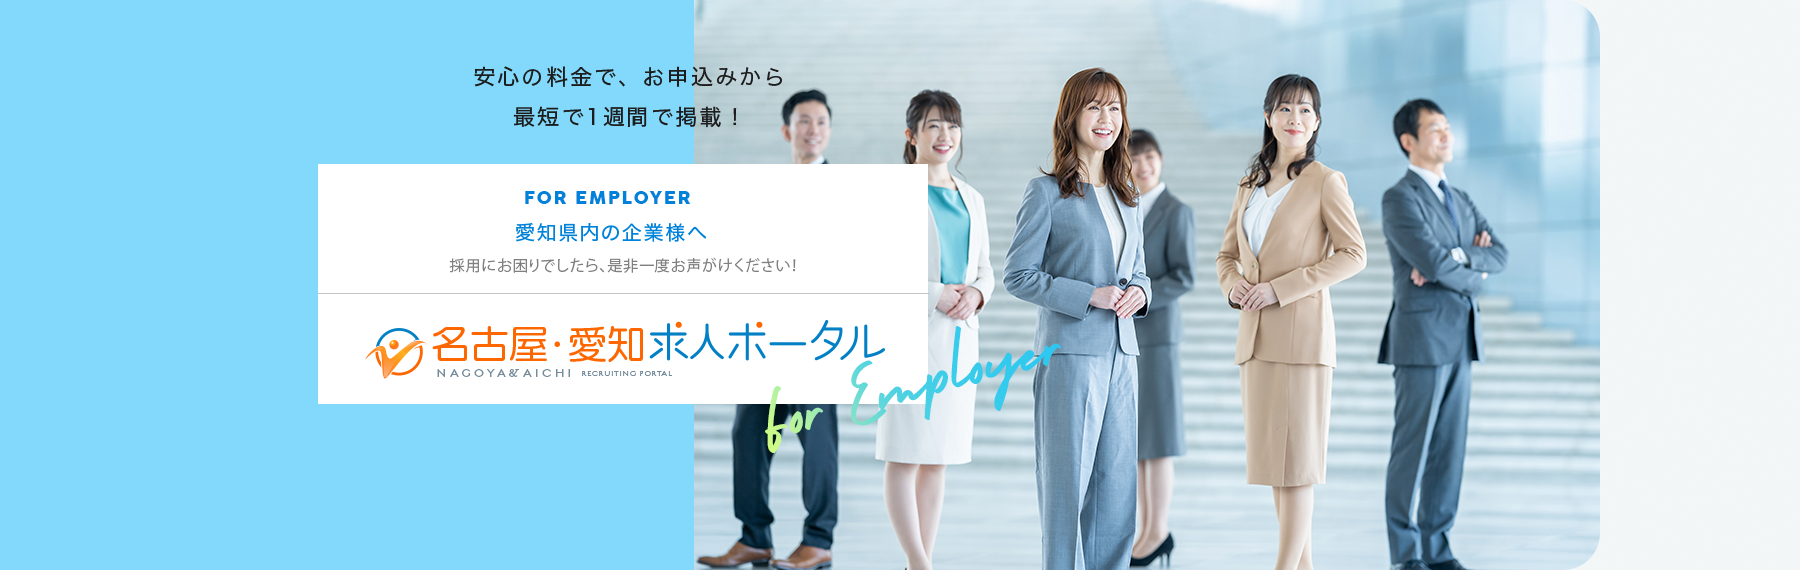 愛知県内の企業様へ
採用にお困りでしたら、是非一度、お声がけください！